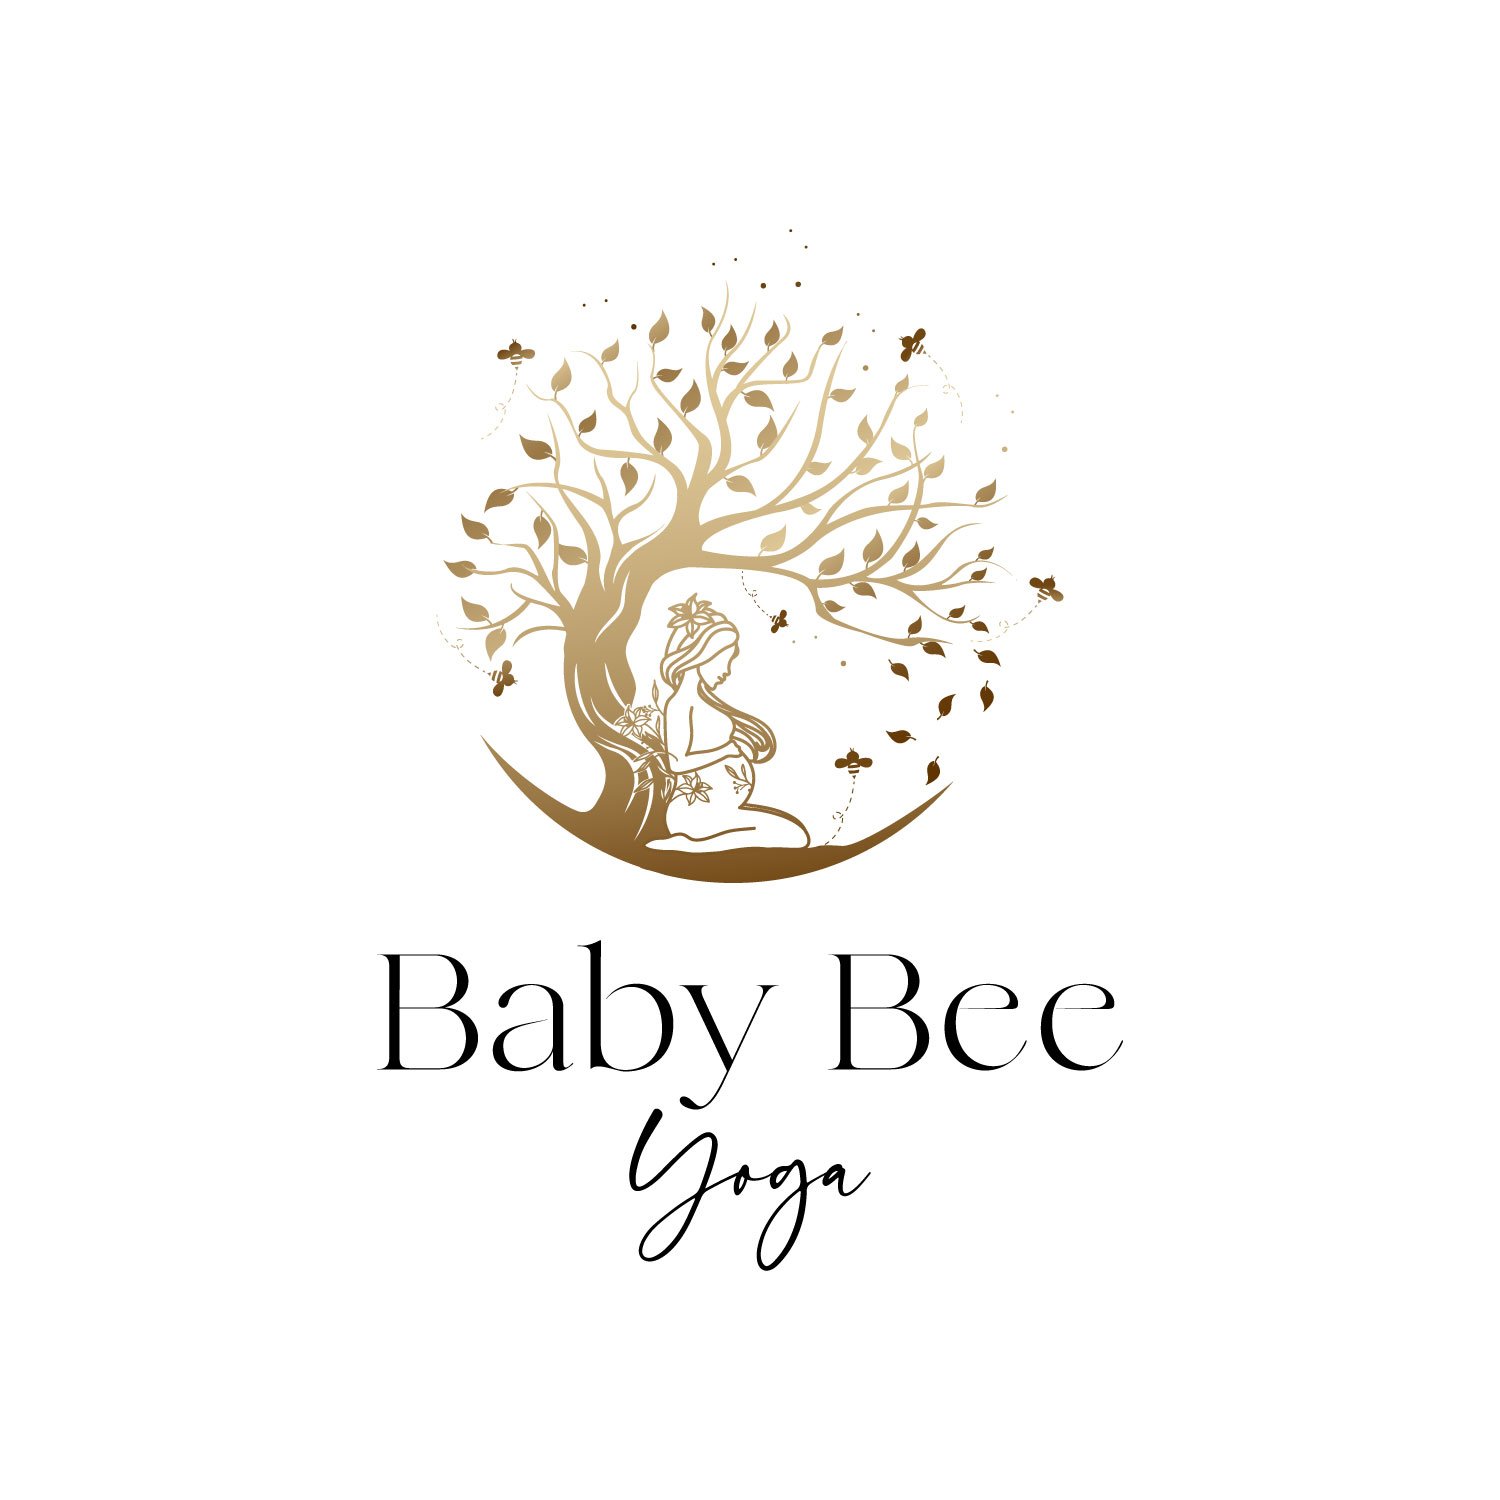 Baby Bee Yoga